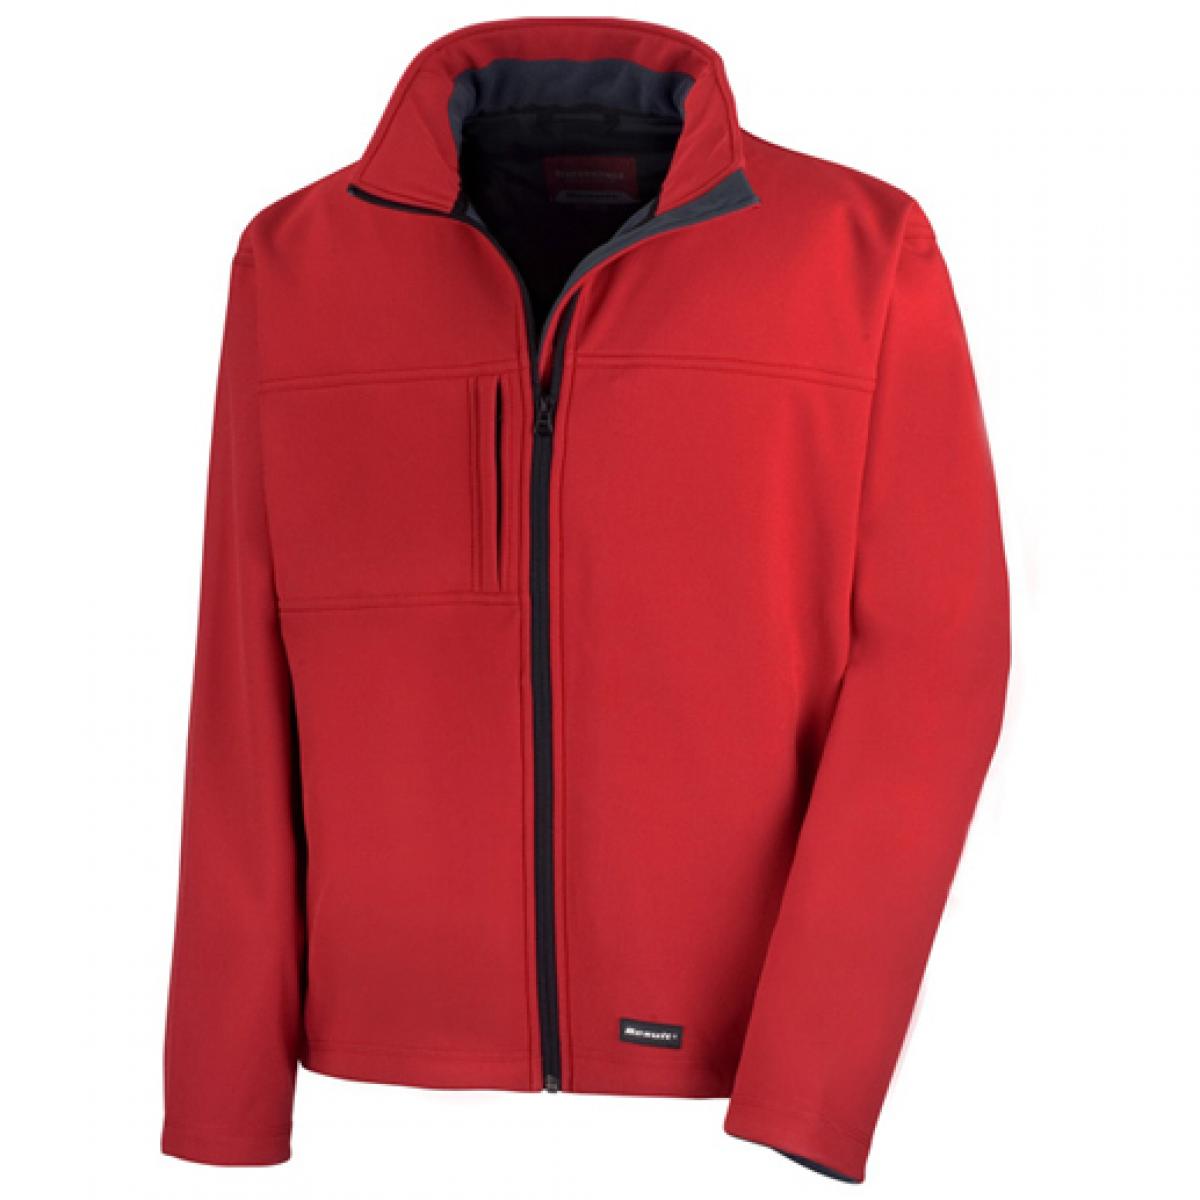 Hersteller: Result Herstellernummer: R121M Artikelbezeichnung: Classic Soft Shell Jacket Farbe: Red